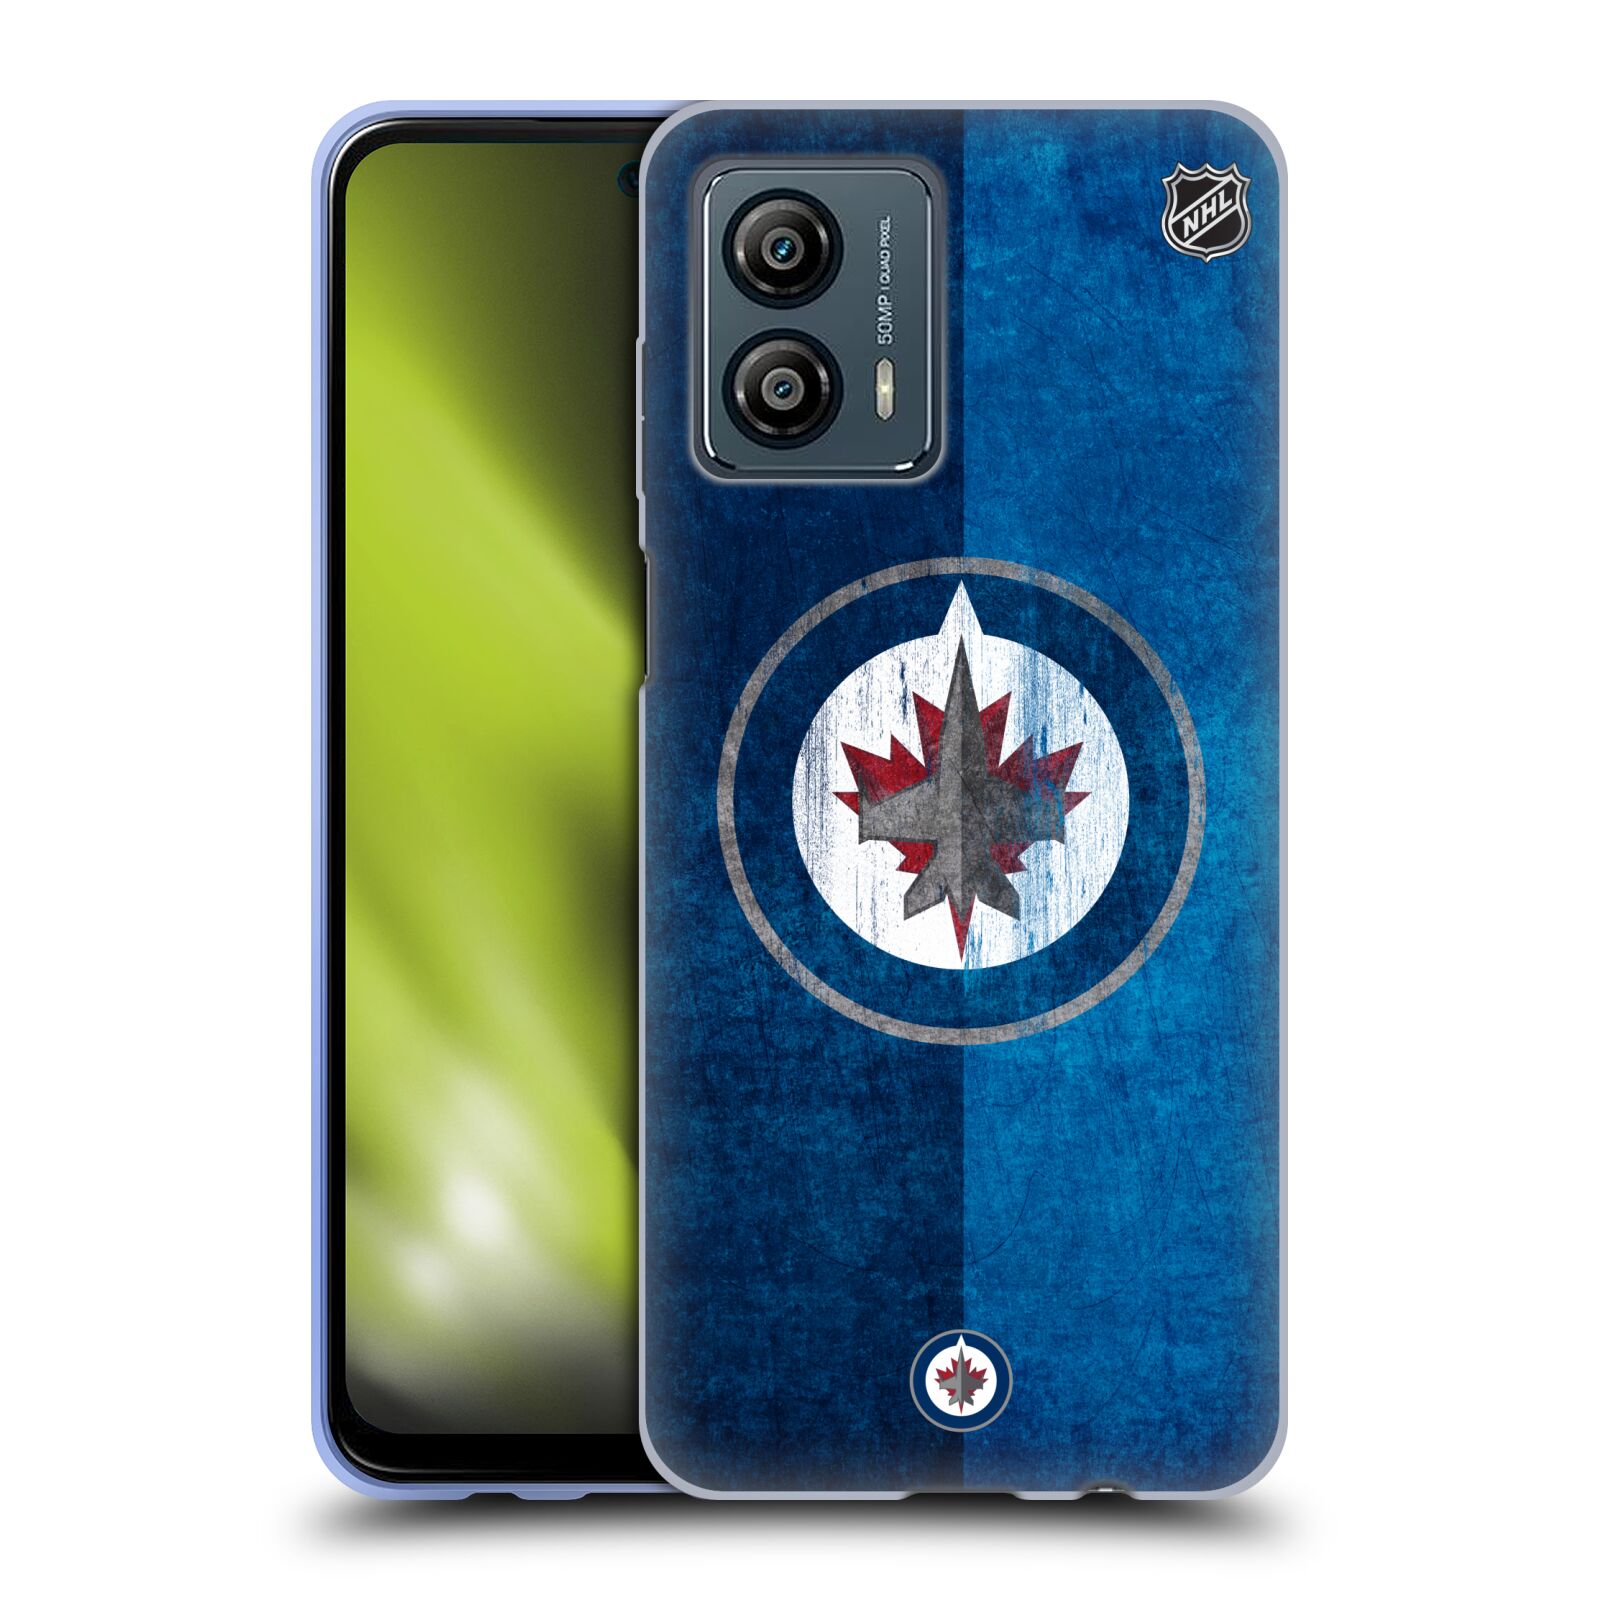 Silikonové pouzdro na mobil Motorola Moto G53 5G - NHL - Půlené logo Winnipeg Jets (Silikonový kryt, obal, pouzdro na mobilní telefon Motorola Moto G53 5G s licencovaným motivem NHL - Půlené logo Winnipeg Jets)